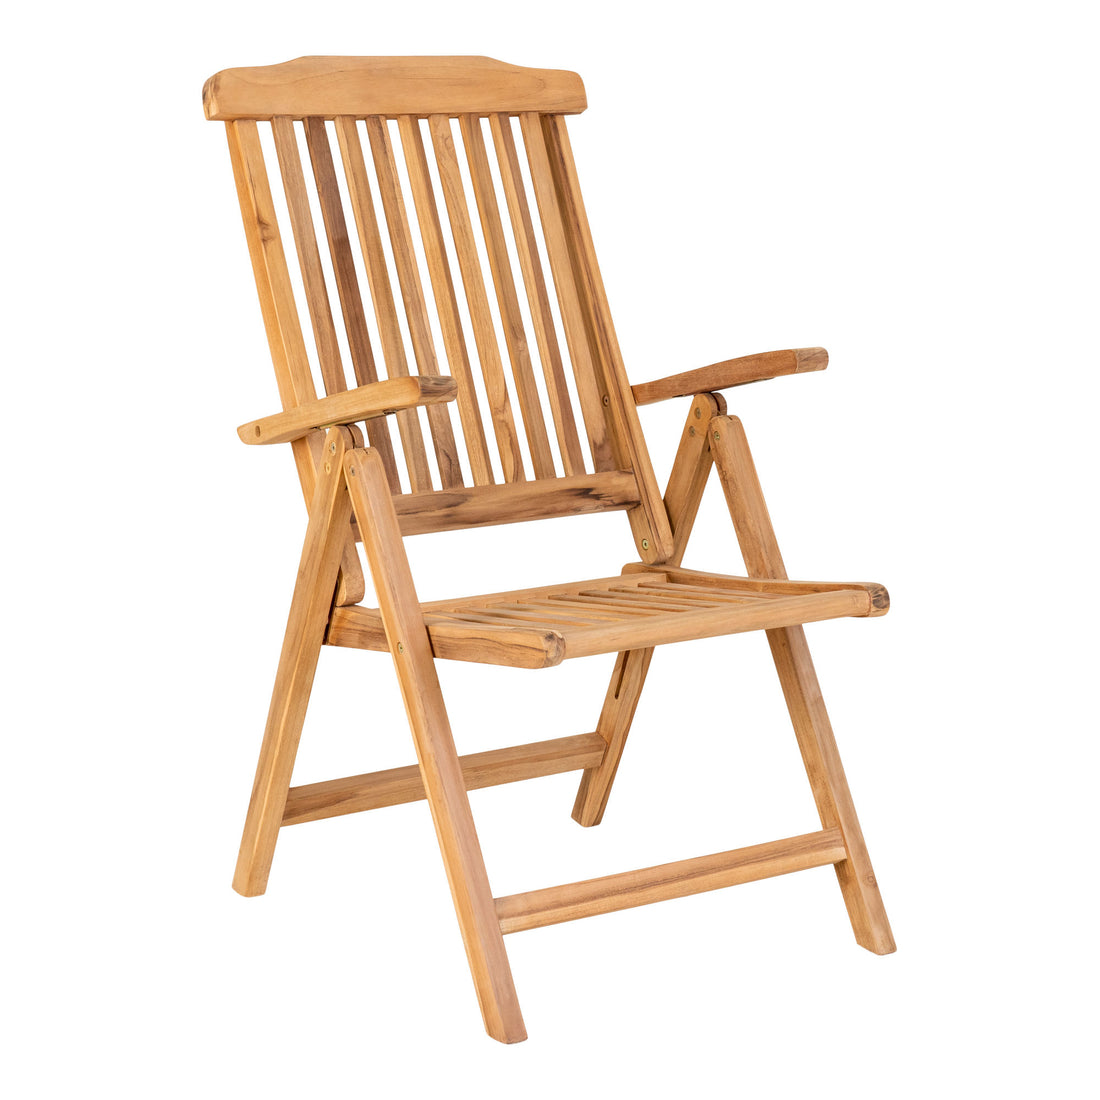 Elche Teak 5 -Position Chair - 5 Position Chair in Teak Wood - 2 - Pcs